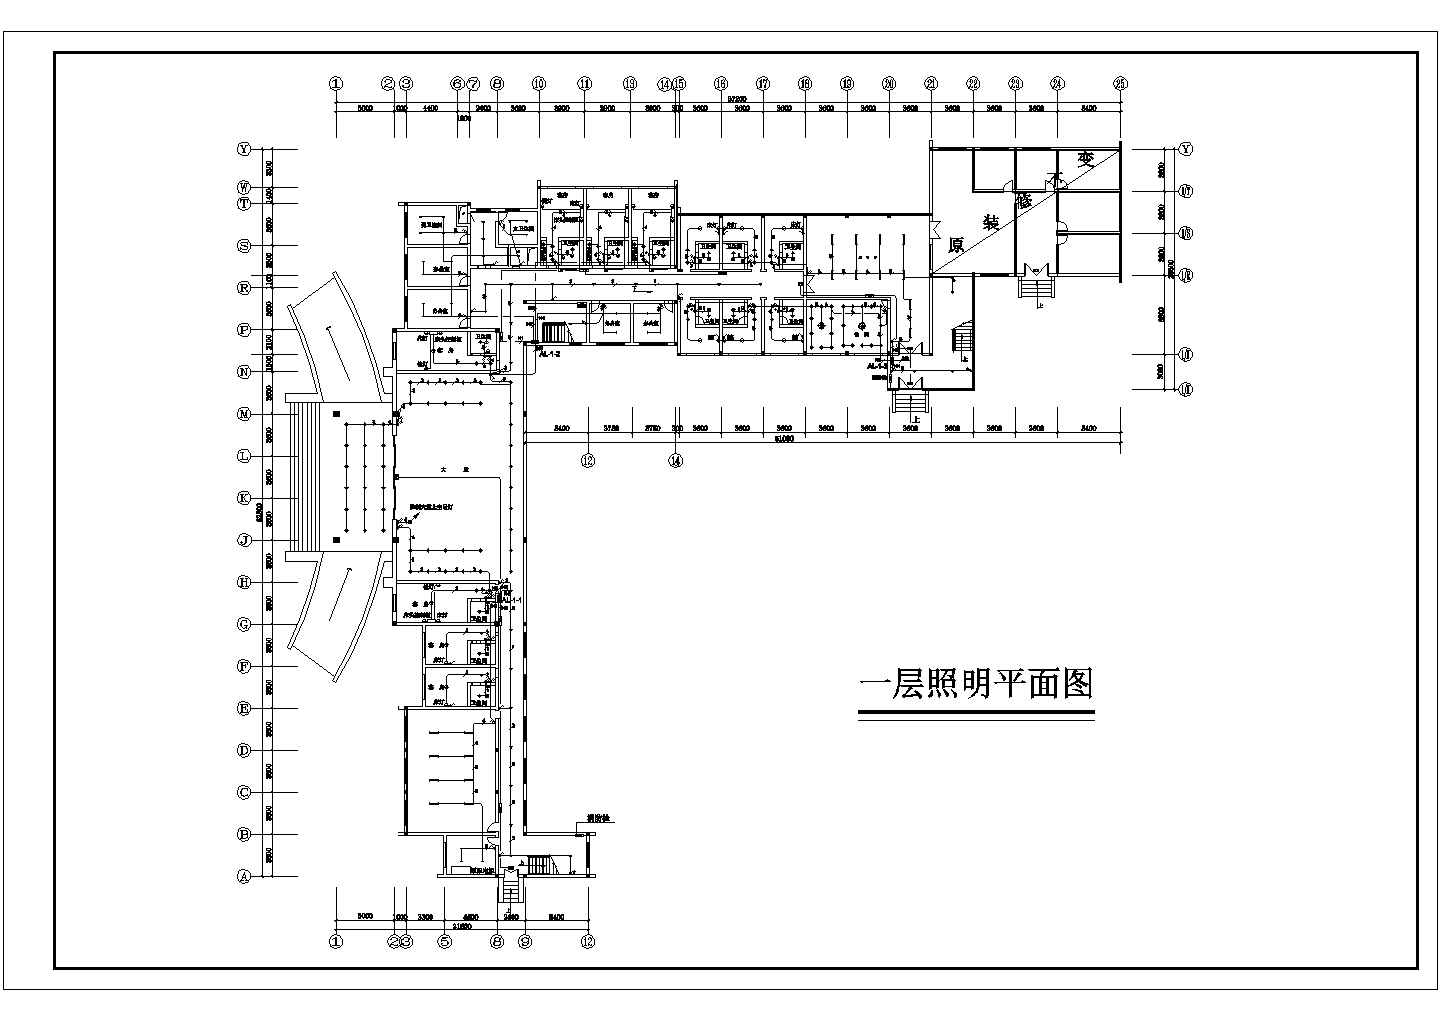 【江苏省】某地区综合楼装修电气图(共9张)